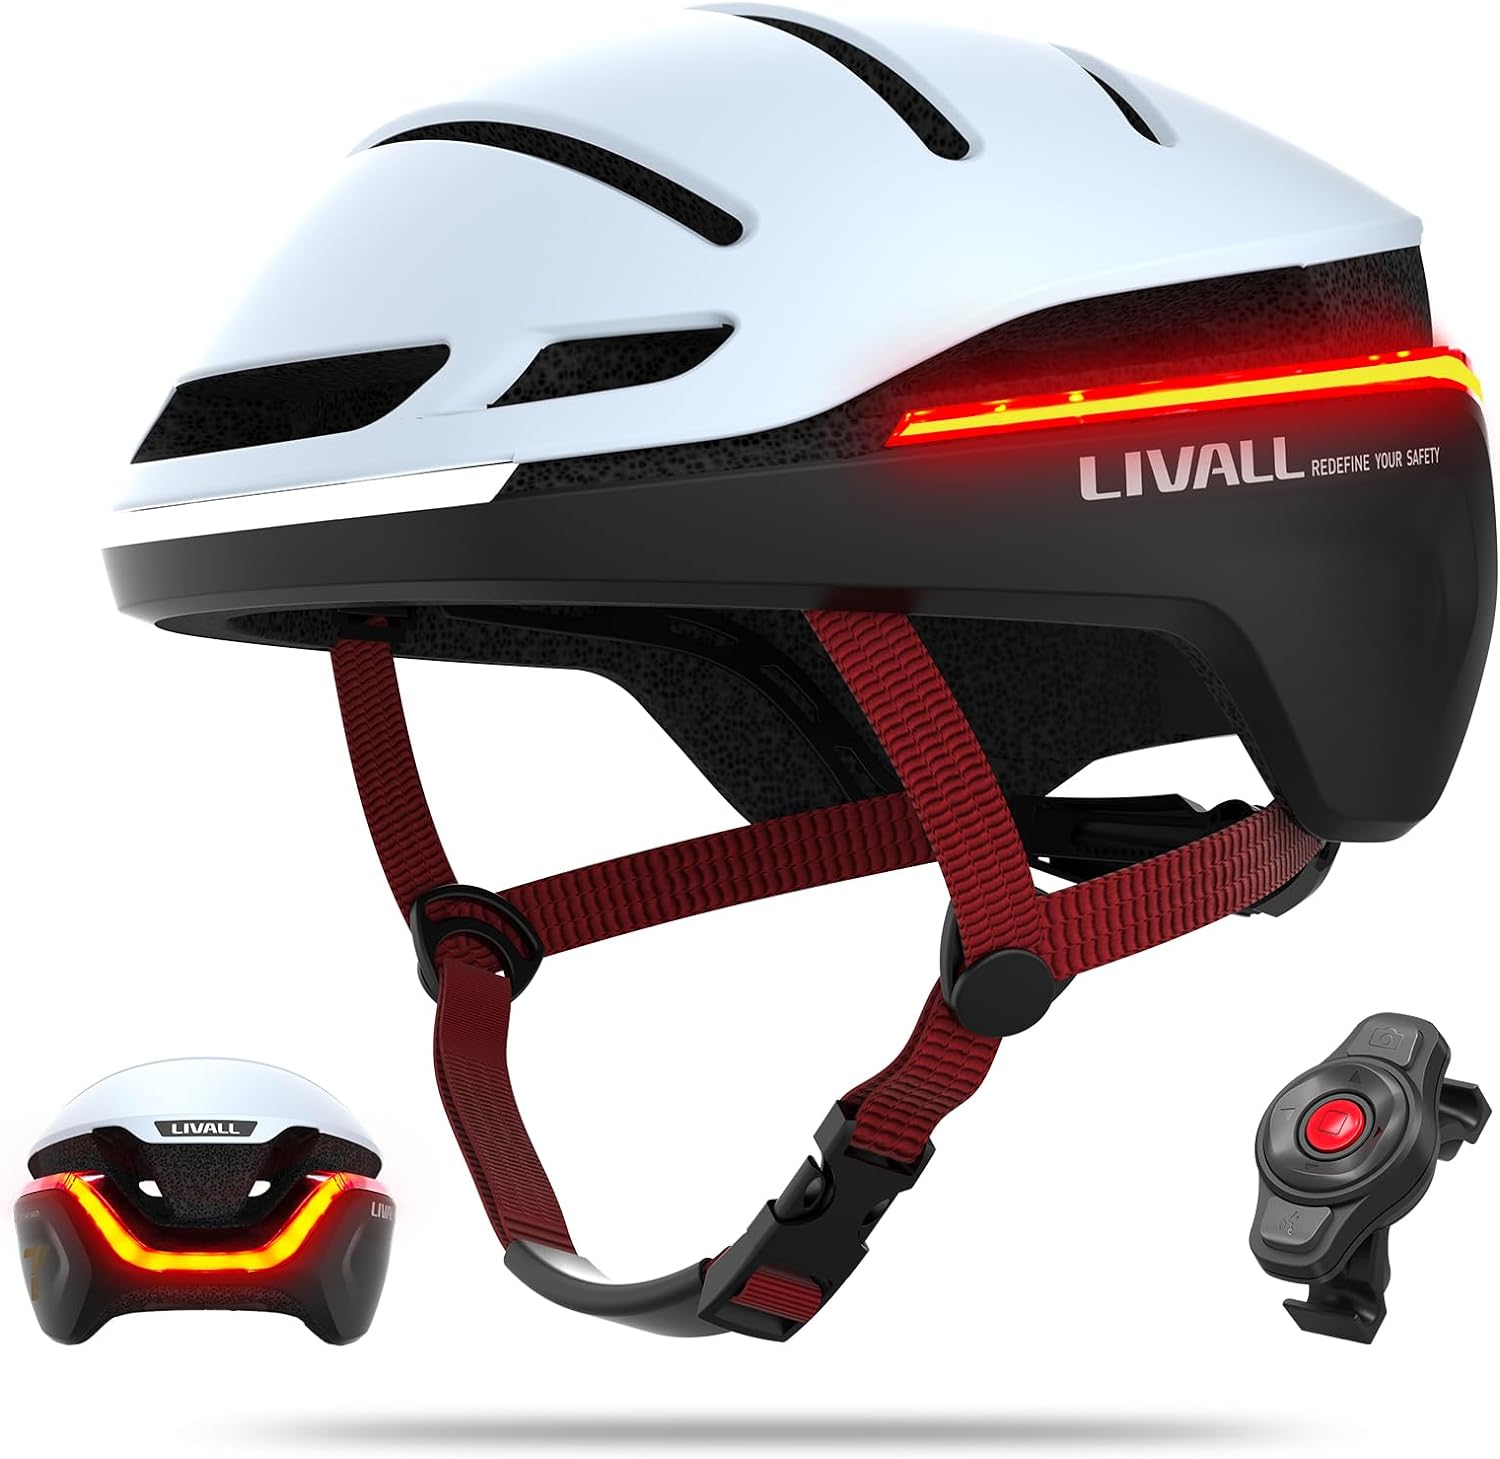 LIVALL EVO21 Smart Bike Helmet with Light, Smart Helmet with Wide-Angle Light | Turn Signals | Brake Warning Light  - White - M 54-58cm